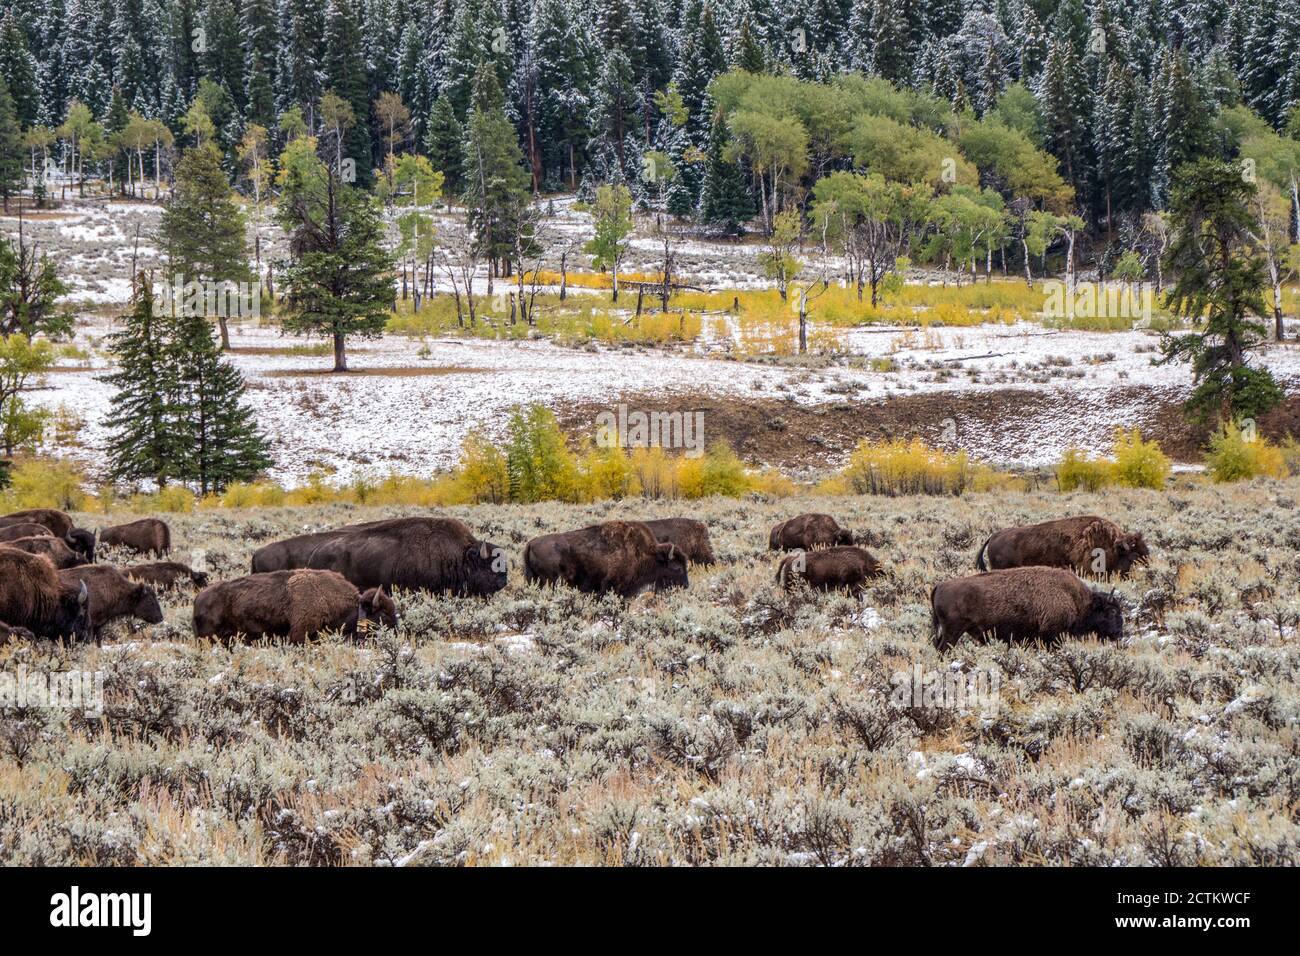 Parc national de Yellowstone, Wyoming, États-Unis. Troupeau de bisons dans la vallée de Lamar après une chute de neige au début de l'automne. Banque D'Images